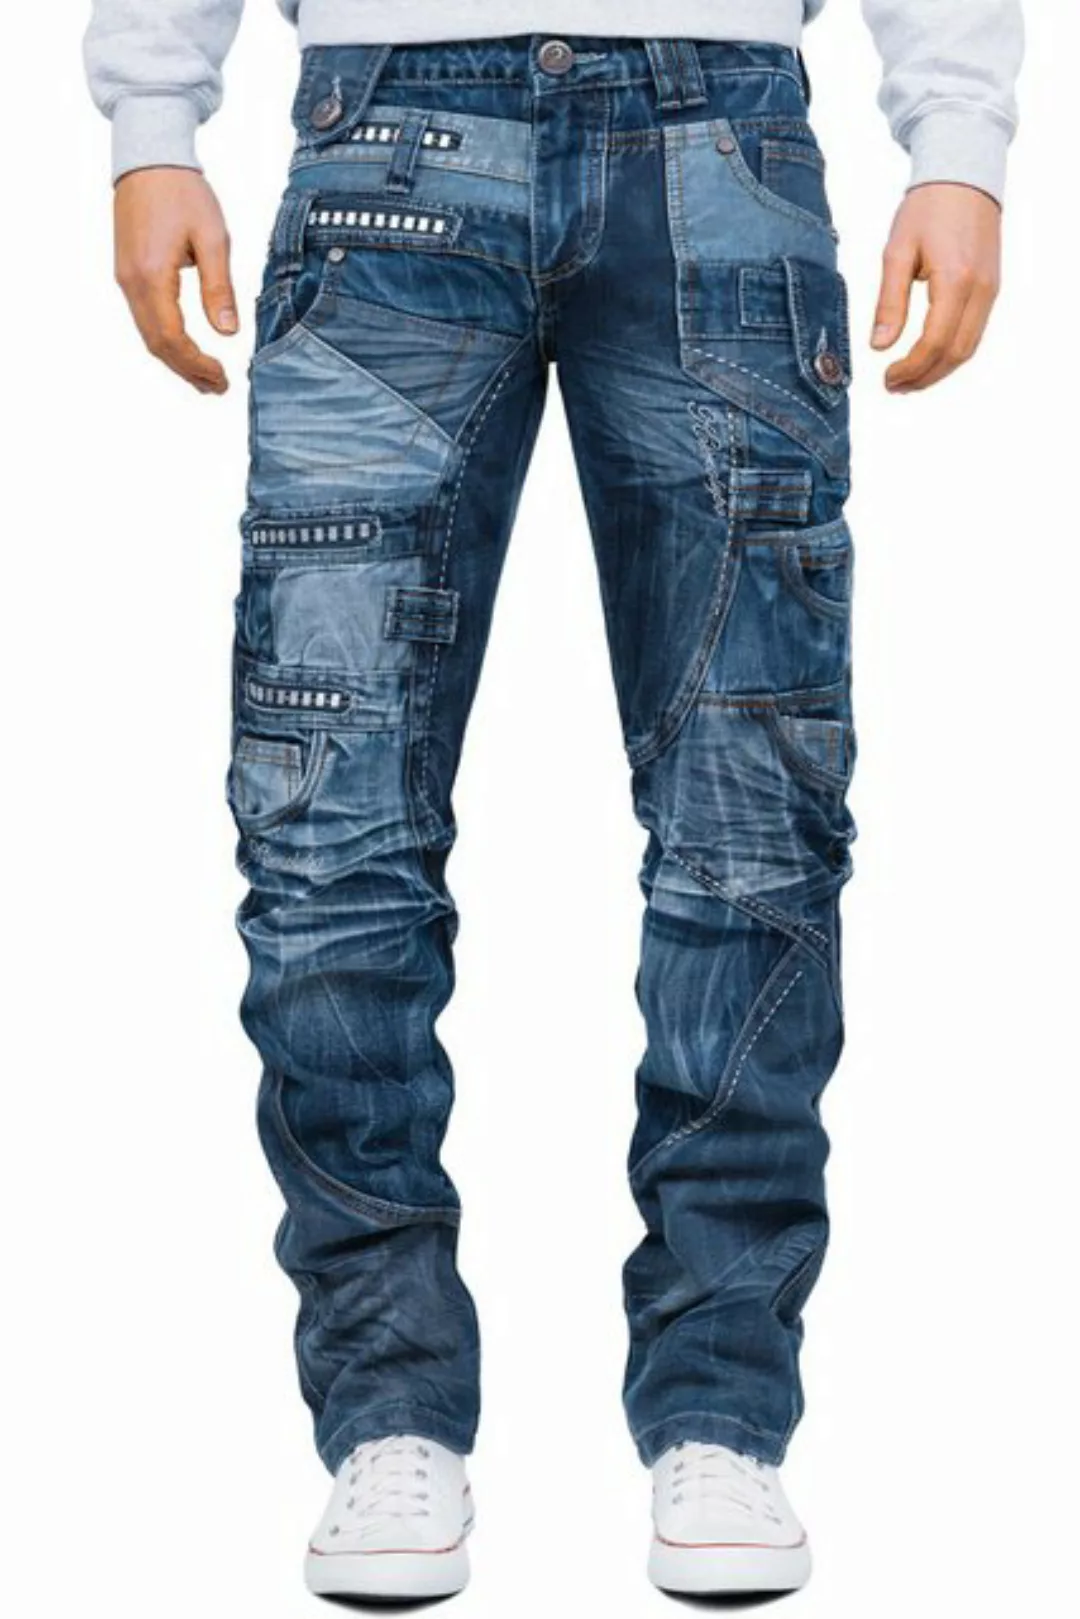 Kosmo Lupo 5-Pocket-Jeans Auffällige Herren Hose BA-KM001-1 Schwarz W29/L32 günstig online kaufen